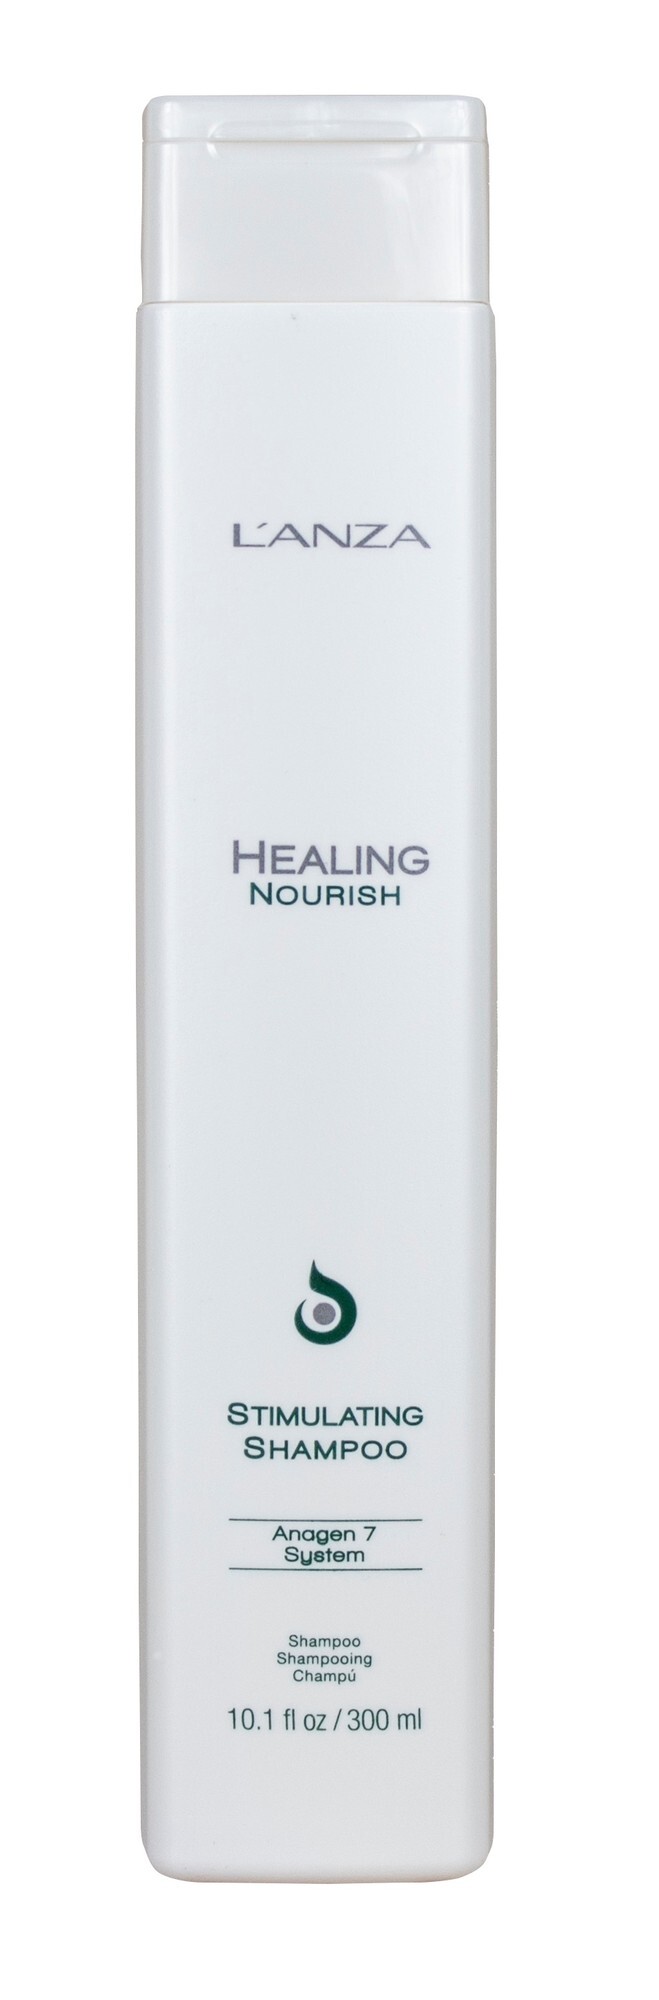 Lanza Healing Nourish Stimulating - 300 ml - Shampoo